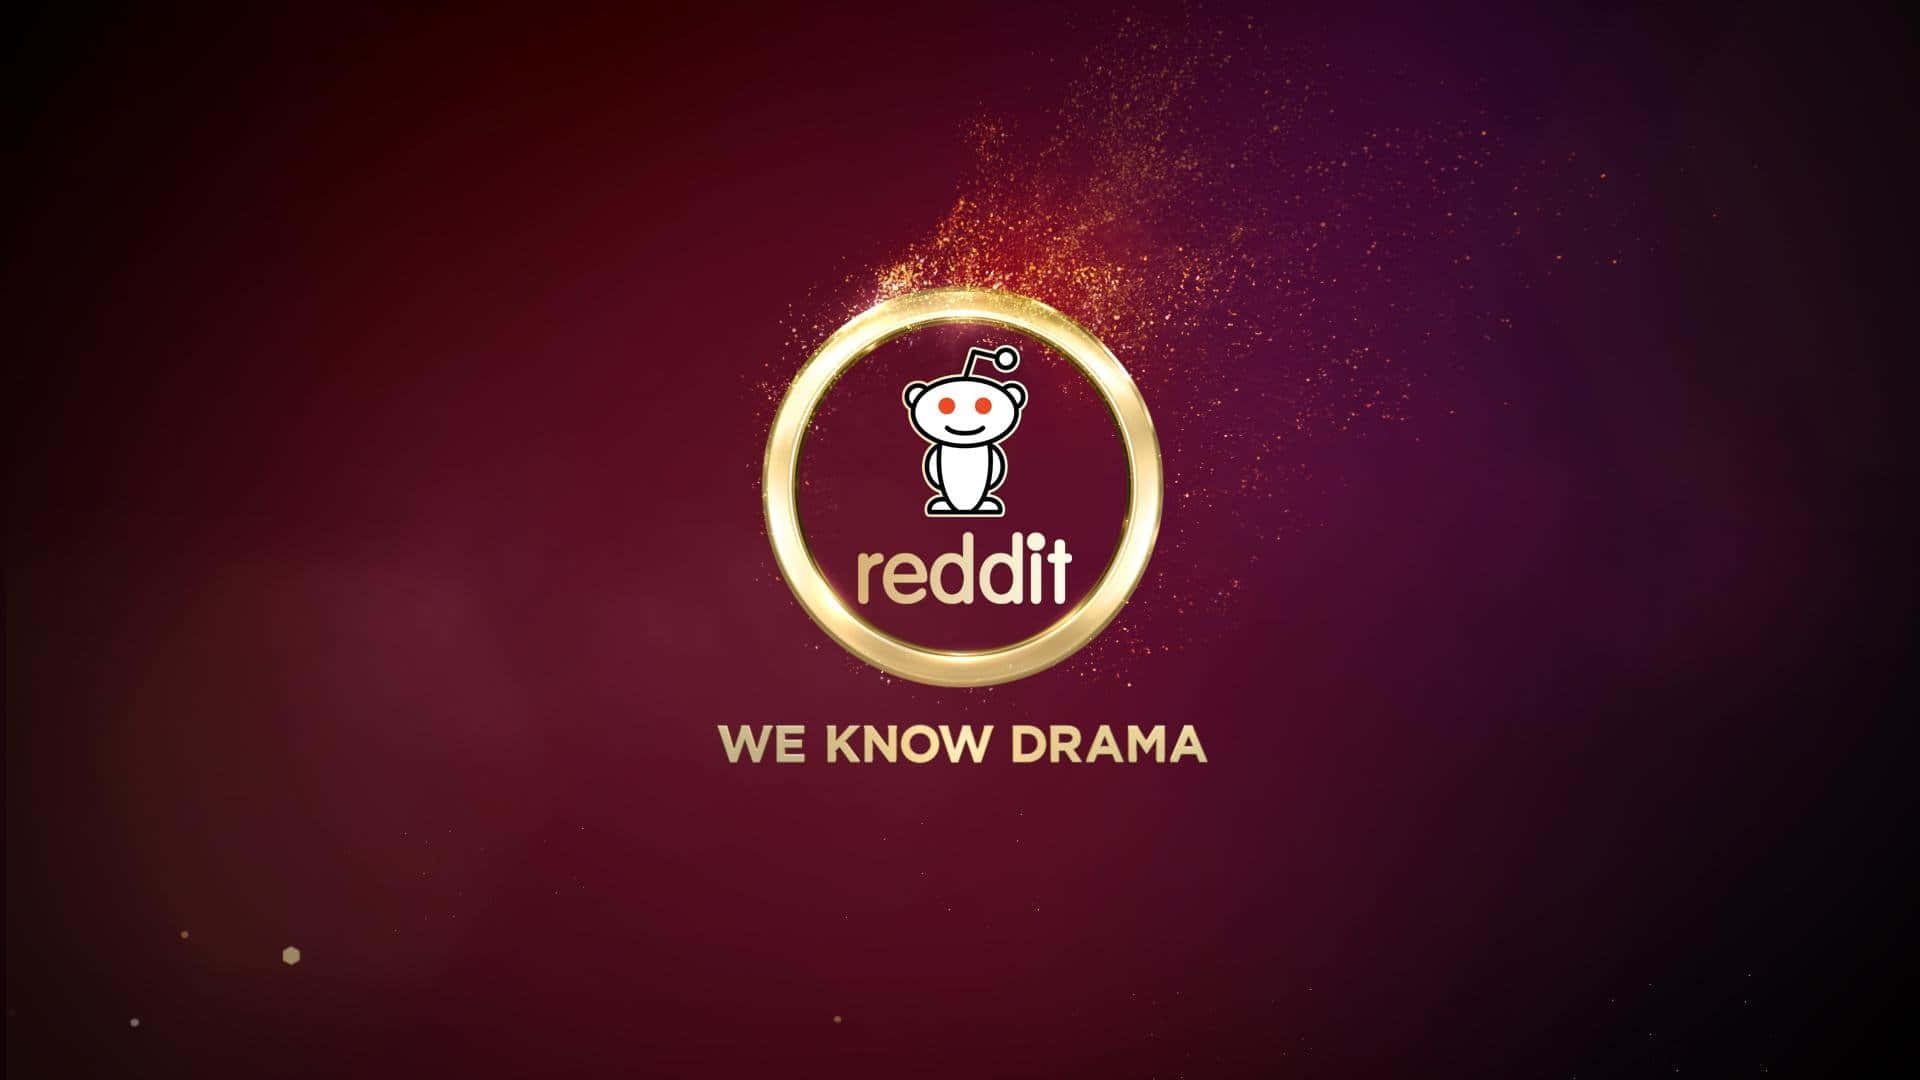 Reddit,wir Kennen Drama.